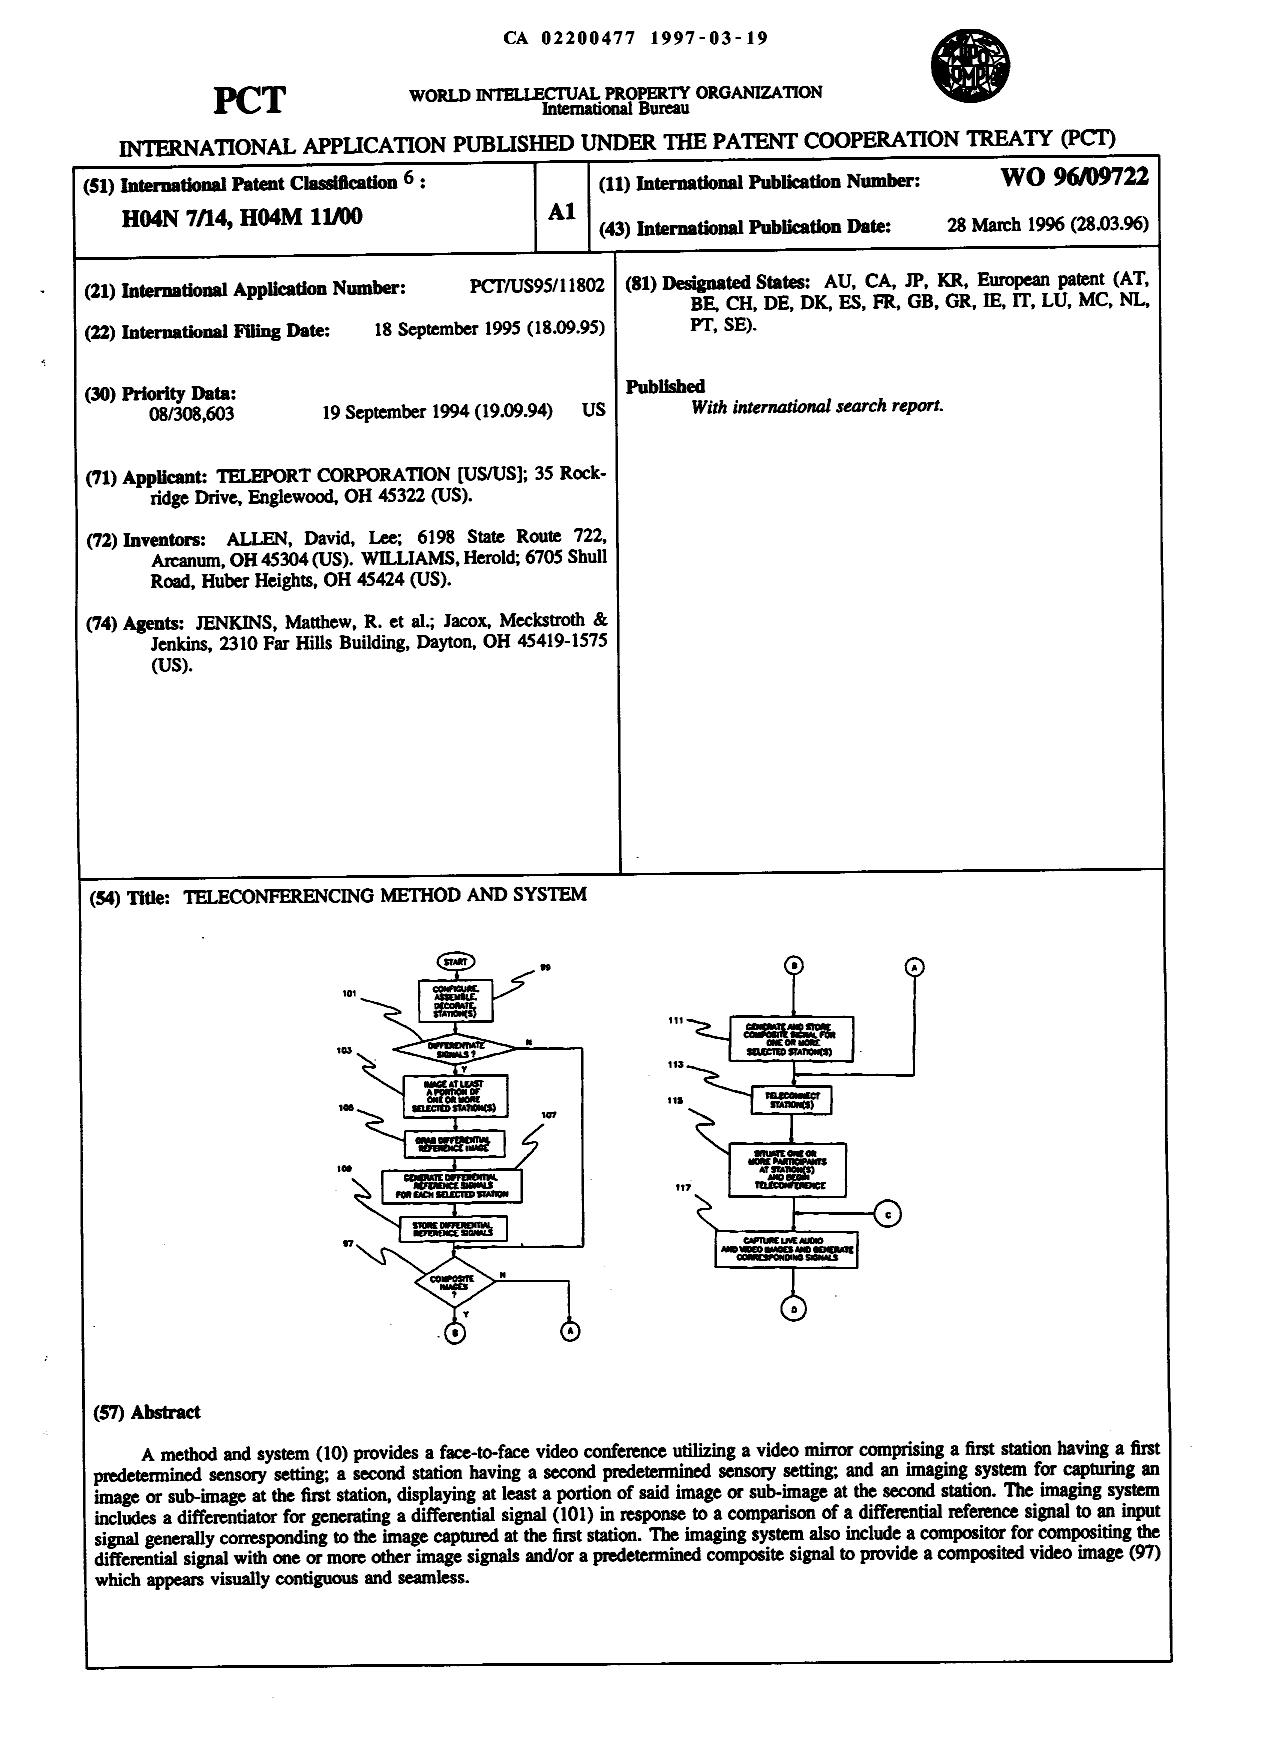 Document de brevet canadien 2200477. Abrégé 19970319. Image 1 de 1